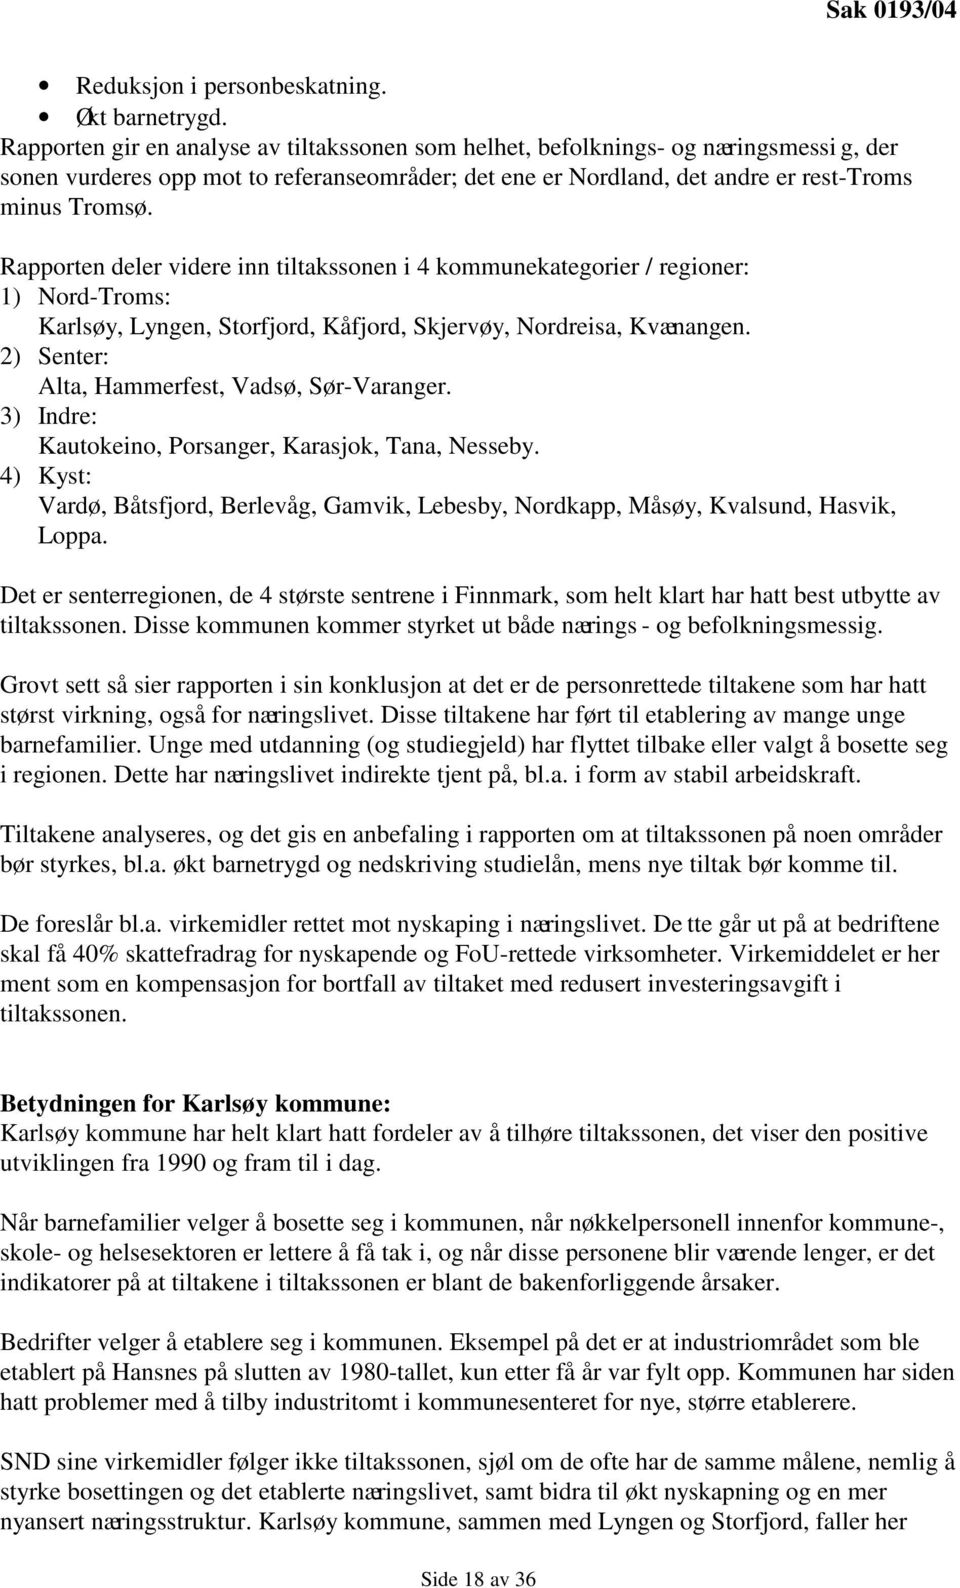 Rapporten deler videre inn tiltakssonen i 4 kommunekategorier / regioner: 1) Nord-Troms: Karlsøy, Lyngen, Storfjord, Kåfjord, Skjervøy, Nordreisa, Kvænangen.